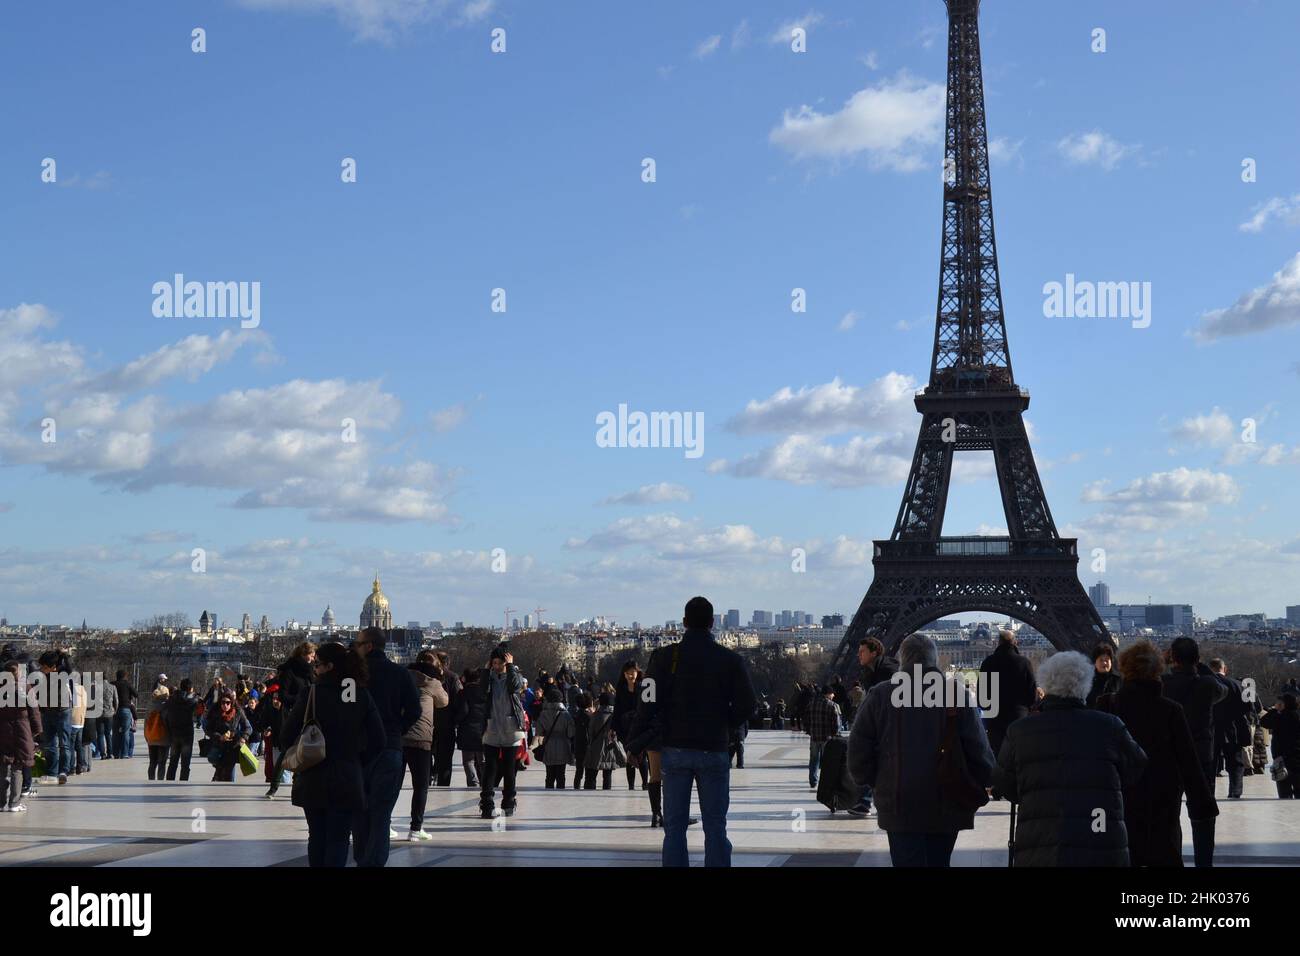 19.12.2012. Paris. Frankreich. Überfüllter Tourist im berühmten Eiffelturm. Eiffelturm in Frankreich mit vielen Touristen. Stockfoto